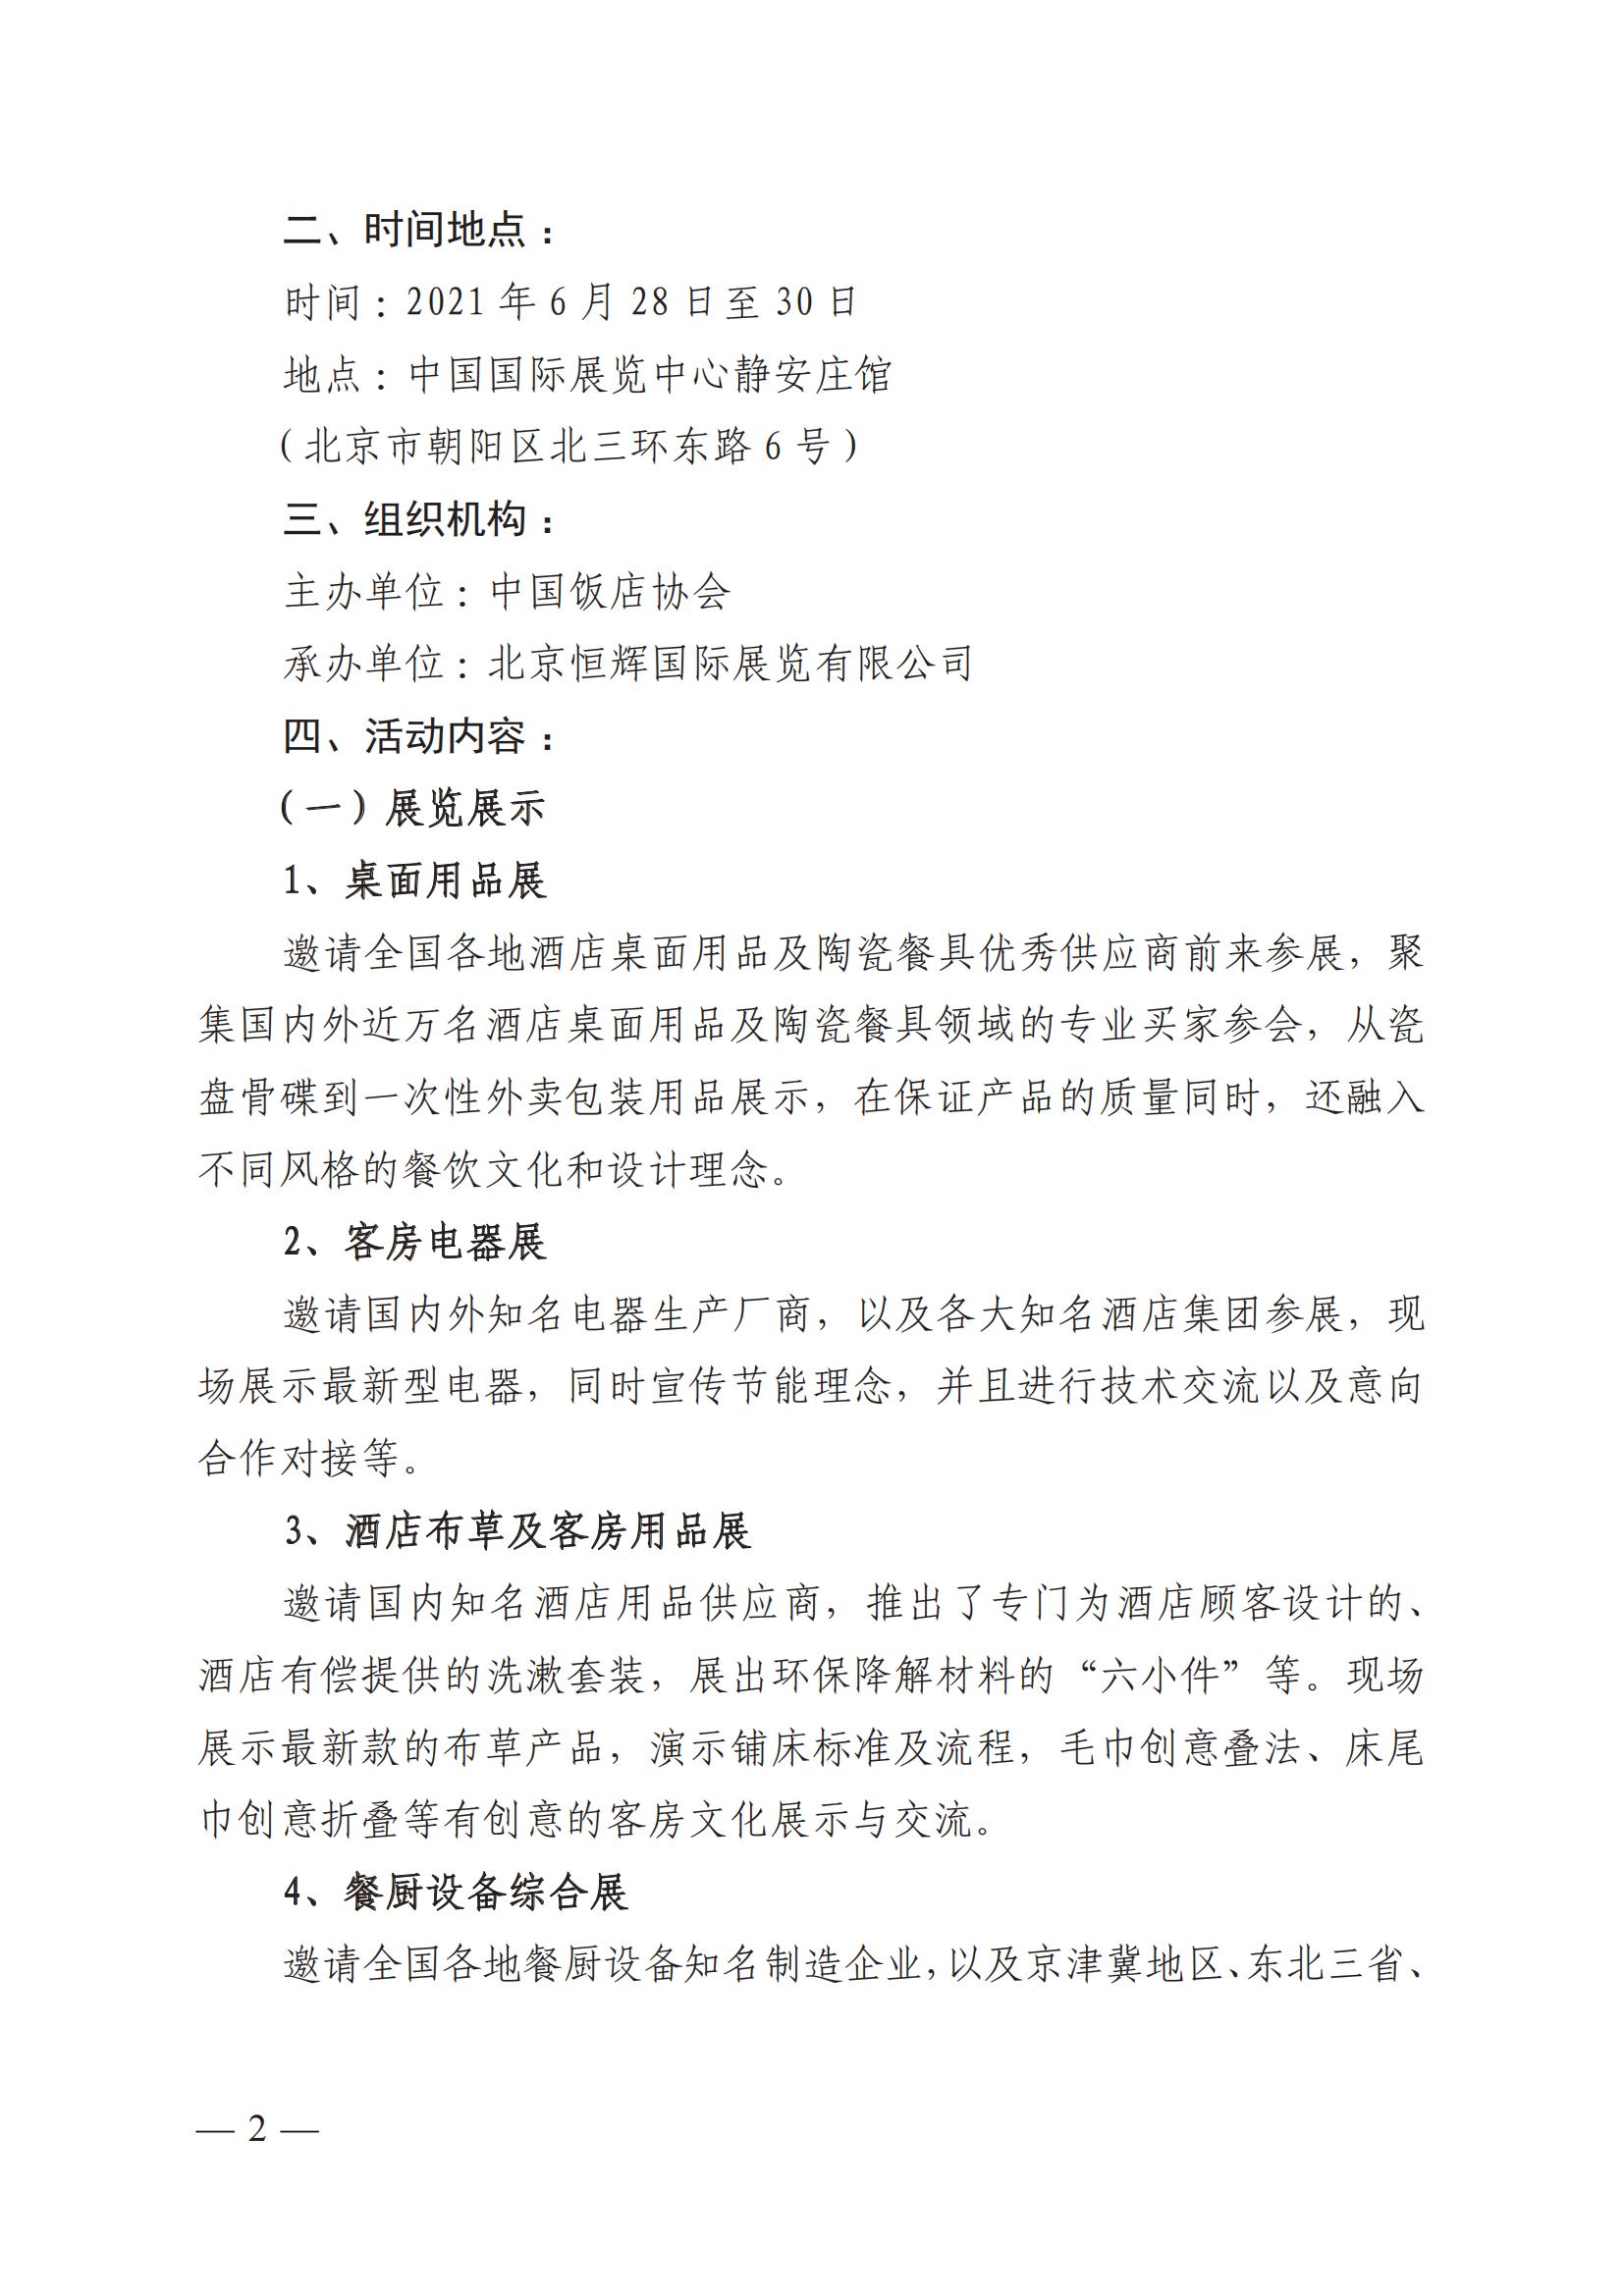 关于举办“第十一届北京国际酒店用品及餐饮业展览会”的通知(图2)